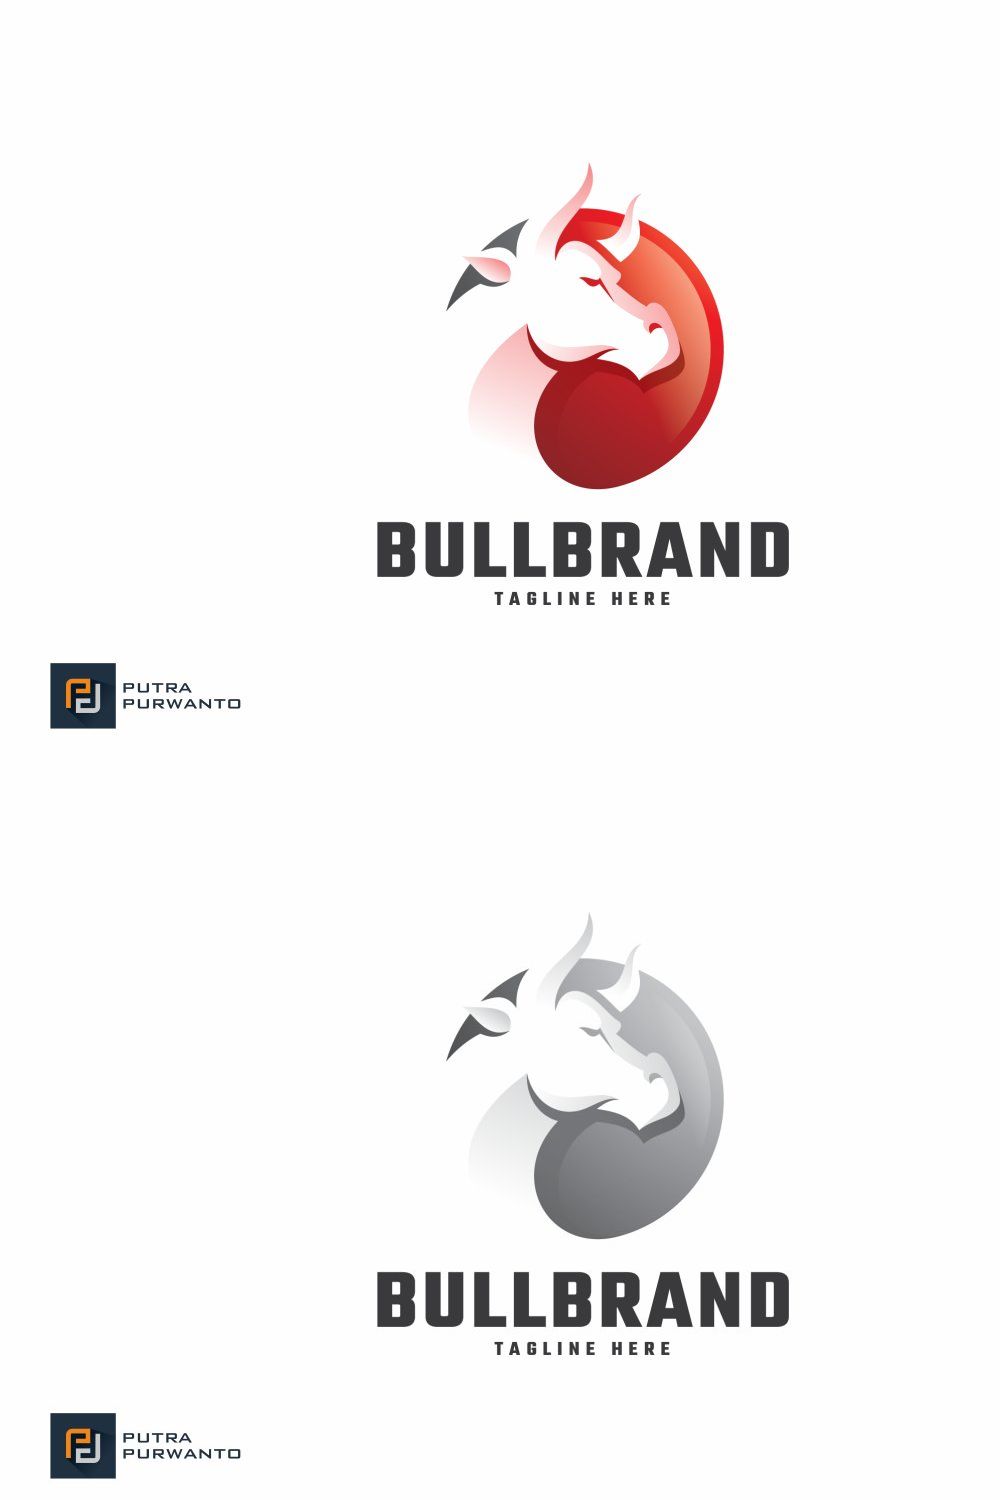 Bull Brand - Logo Template pinterest preview image.